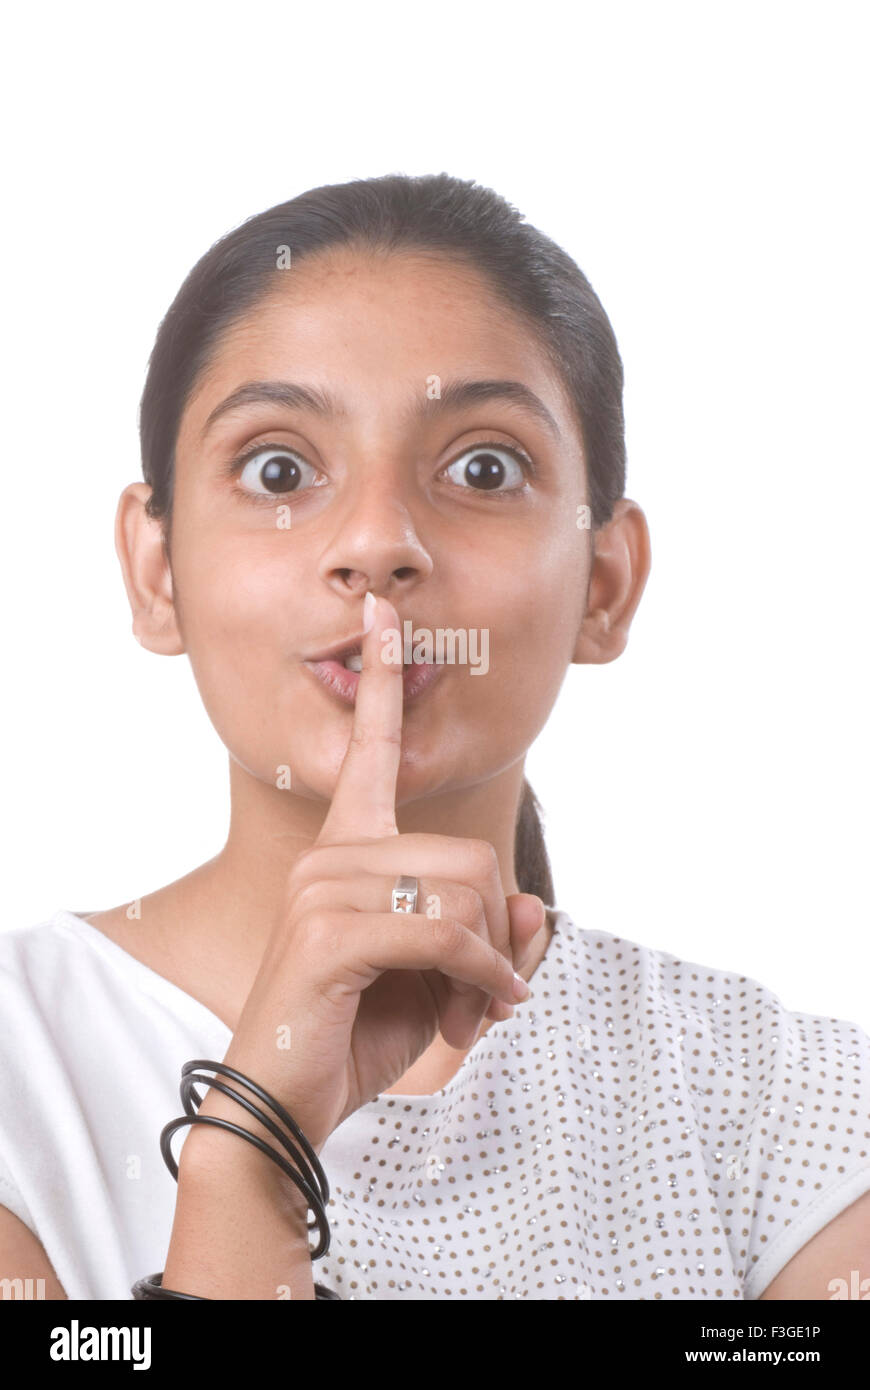 Teenager Mädchen hielt Zeigefinger auf Mund halten Stille Herr #733 anzeigen Stockfoto